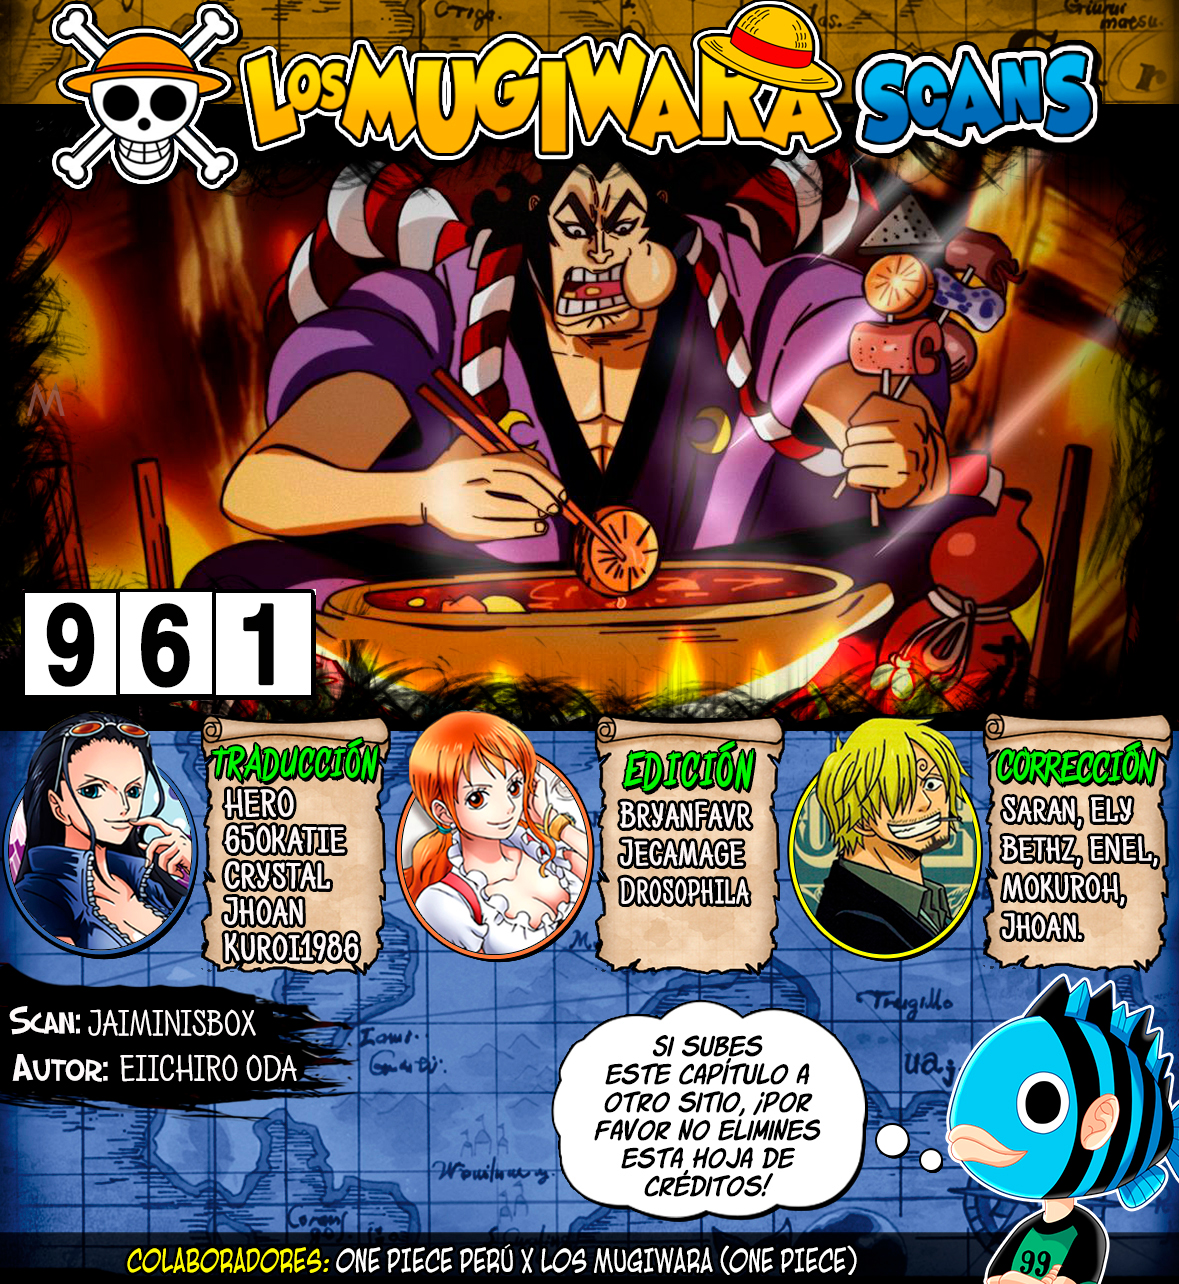 One Piece Manga 961 Espanol Mugiwara Scans Wocial Foro Anime Manga Comics Videojuegos Social